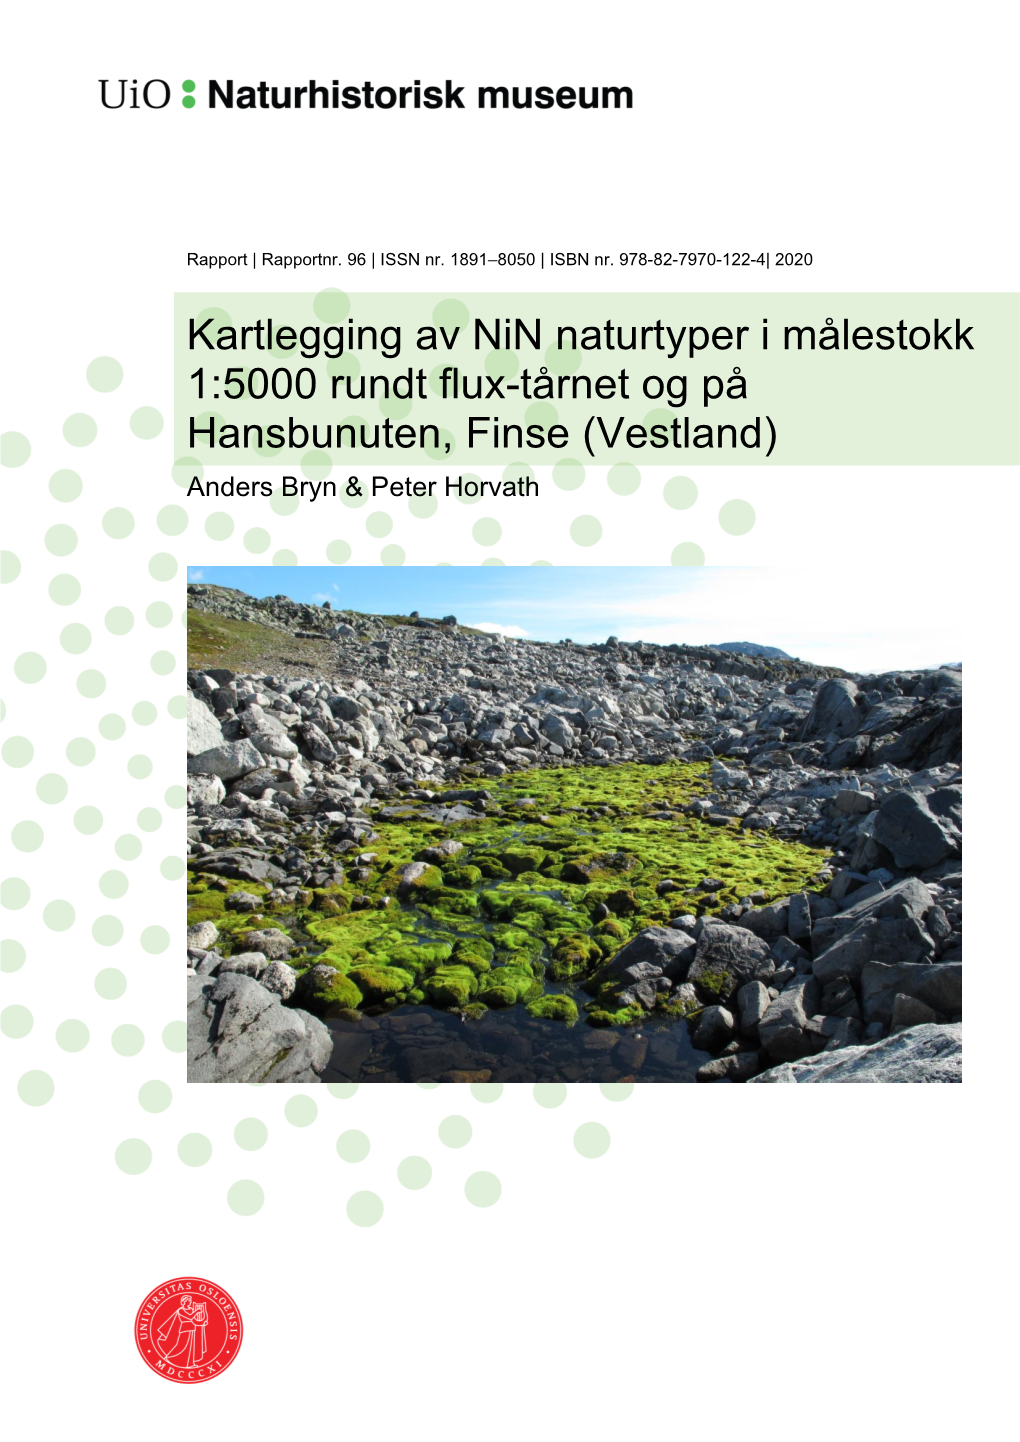 Kartlegging Av Nin Naturtyper I Målestokk 1:5000 Rundt Flux-Tårnet Og På Hansbunuten, Finse (Vestland) Anders Bryn & Peter Horvath